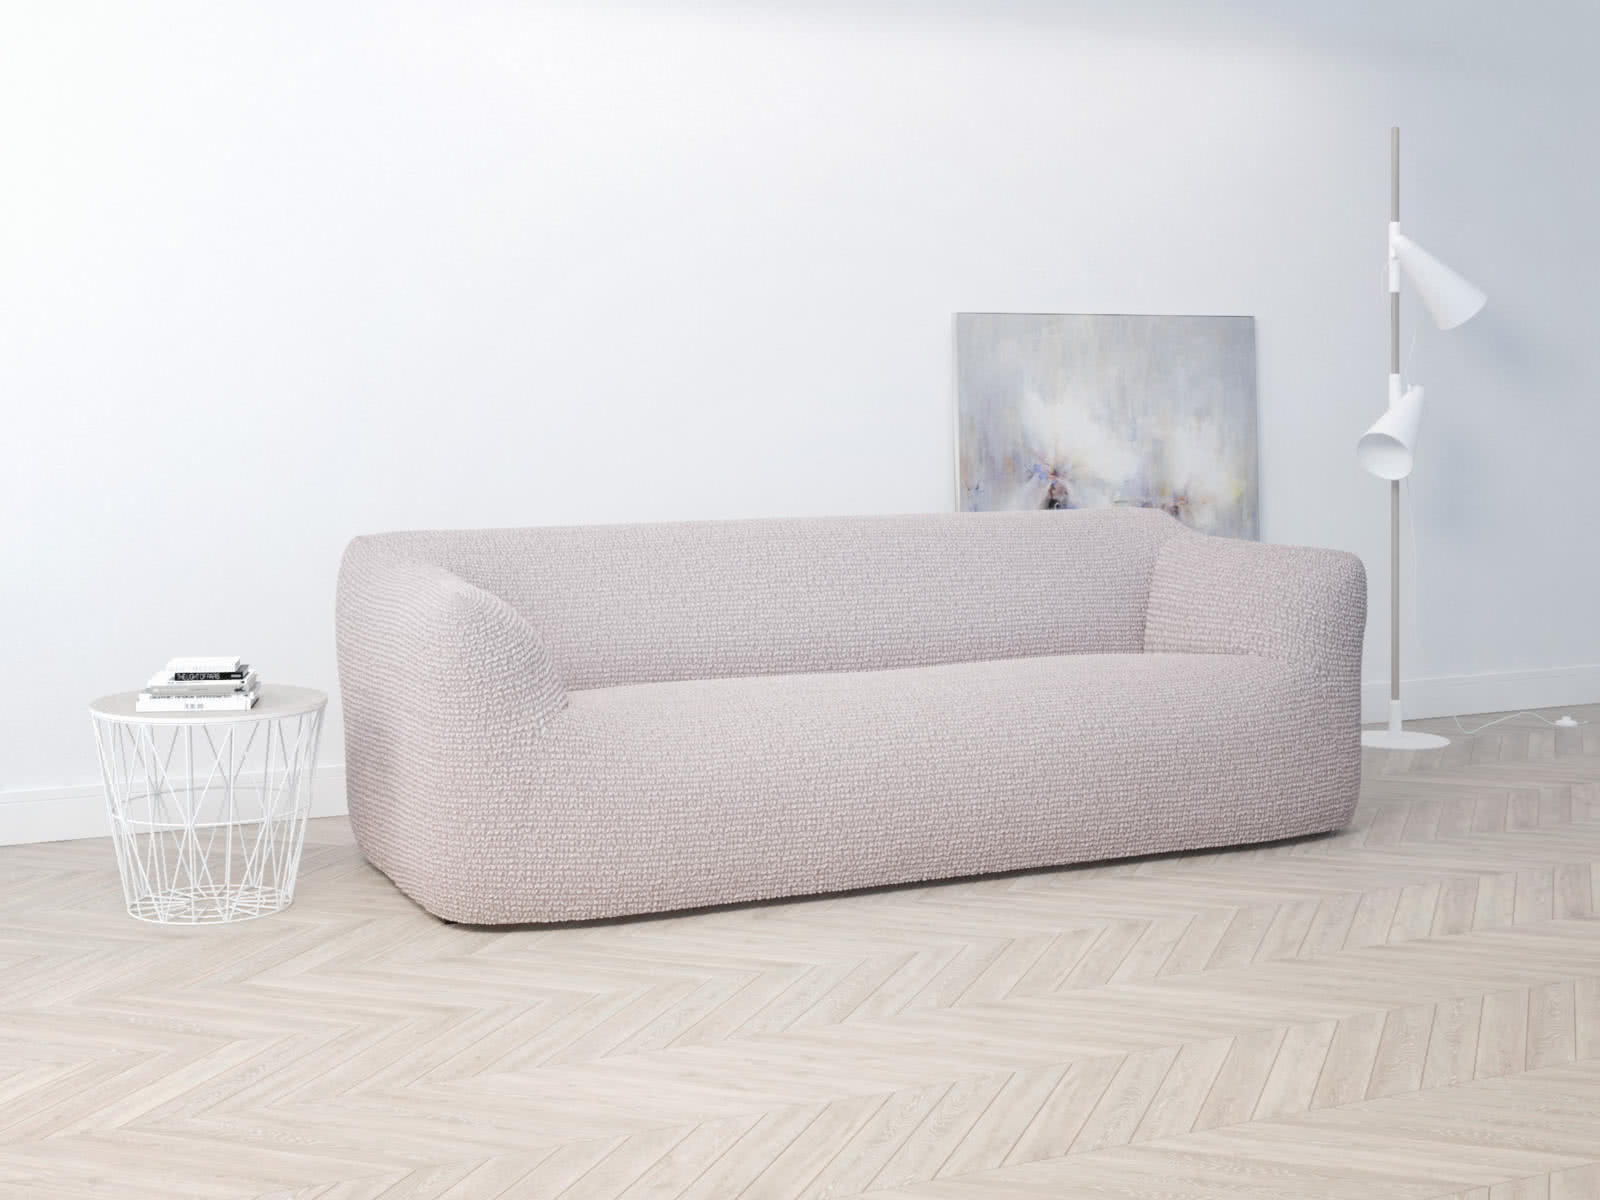 Купить Чехол на трехместный диван Dreamline 160-210 см, бледно-розовый бледно-розовый недорого в интернет-магазине